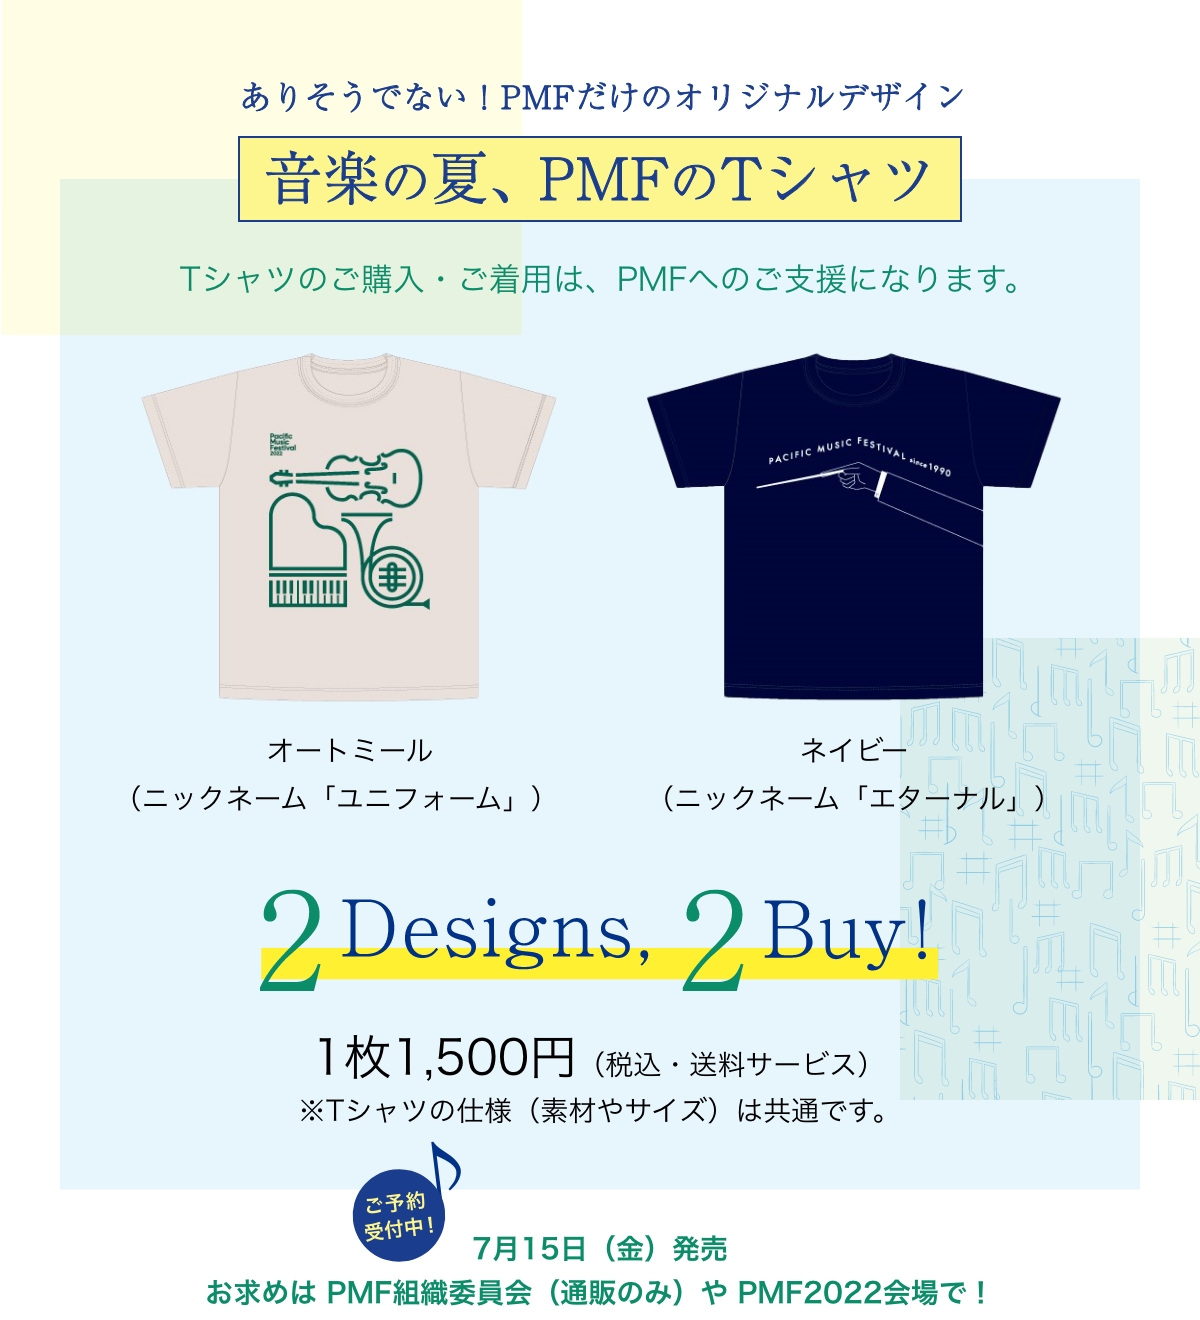 ありそうでない！PMFだけのオリジナルデザイン 音楽の夏、PMFのTシャツ Tシャツのご購入・ご着用は、PMFへのご支援になります。／オートミール（ニックネーム「ユニフォーム」）、ネイビー（ニックネーム「エターナル」）／2designs, 2buy／1枚1,500円（税込・送料サービス）※Tシャツの仕様（素材やサイズ）は共通です。／ご予約受付中！7月15日（金）発売 お求めは PMF組織委員会（通販のみ）やPMF2022会場で！